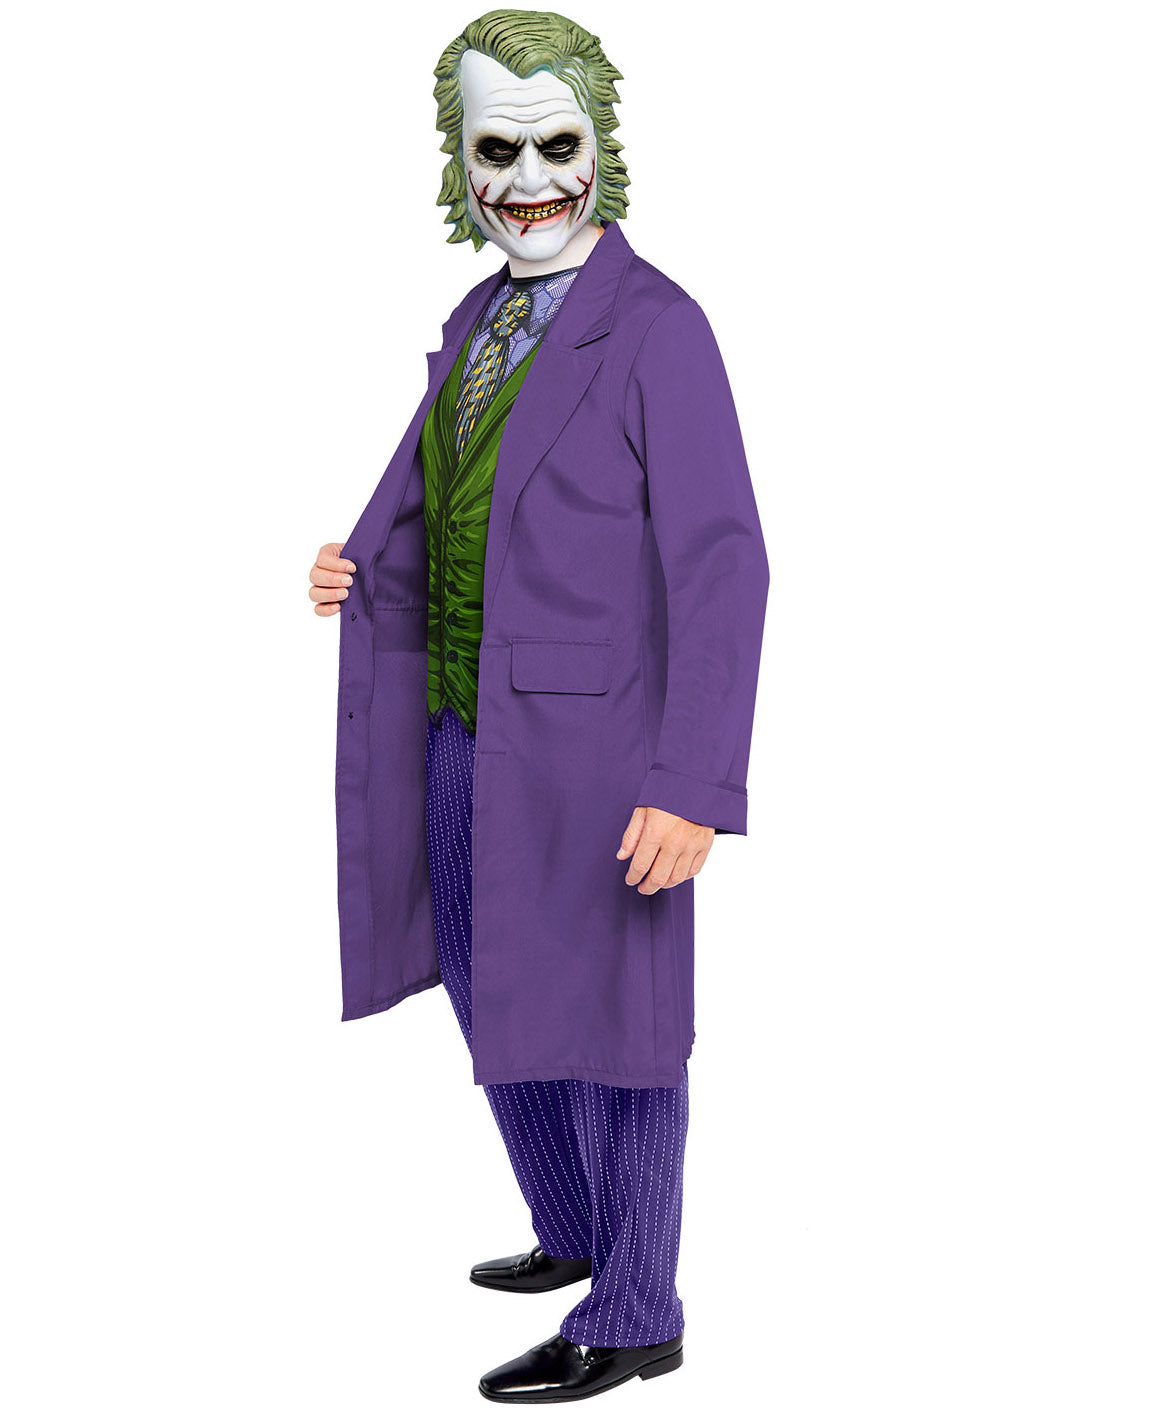 Joker Movie Style Costume